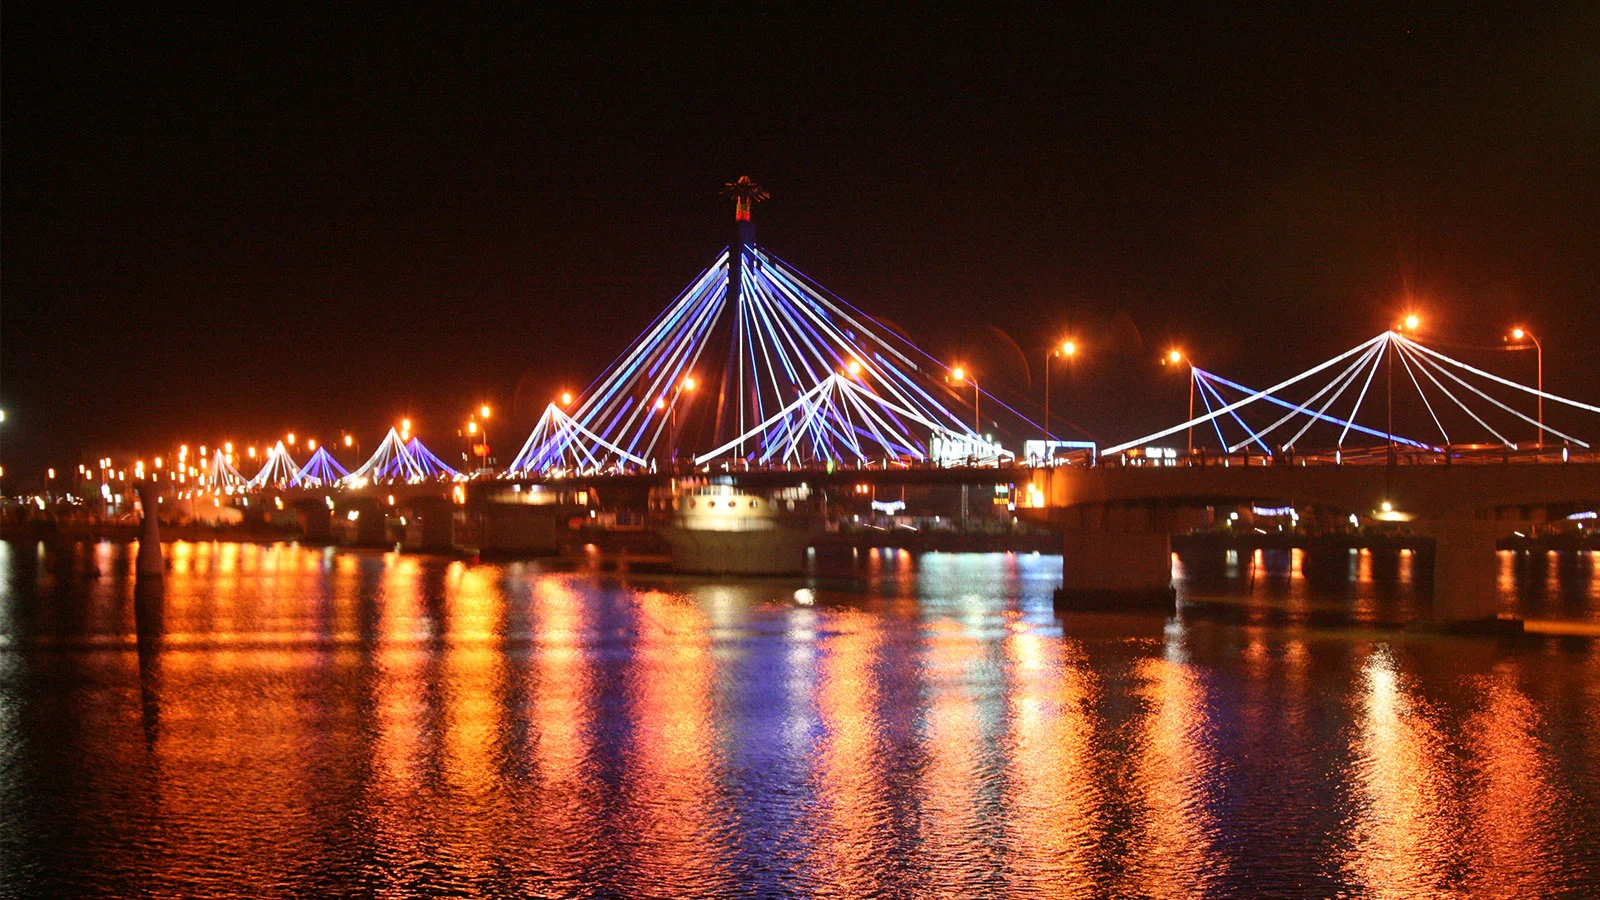 Cầu Sông Hàn